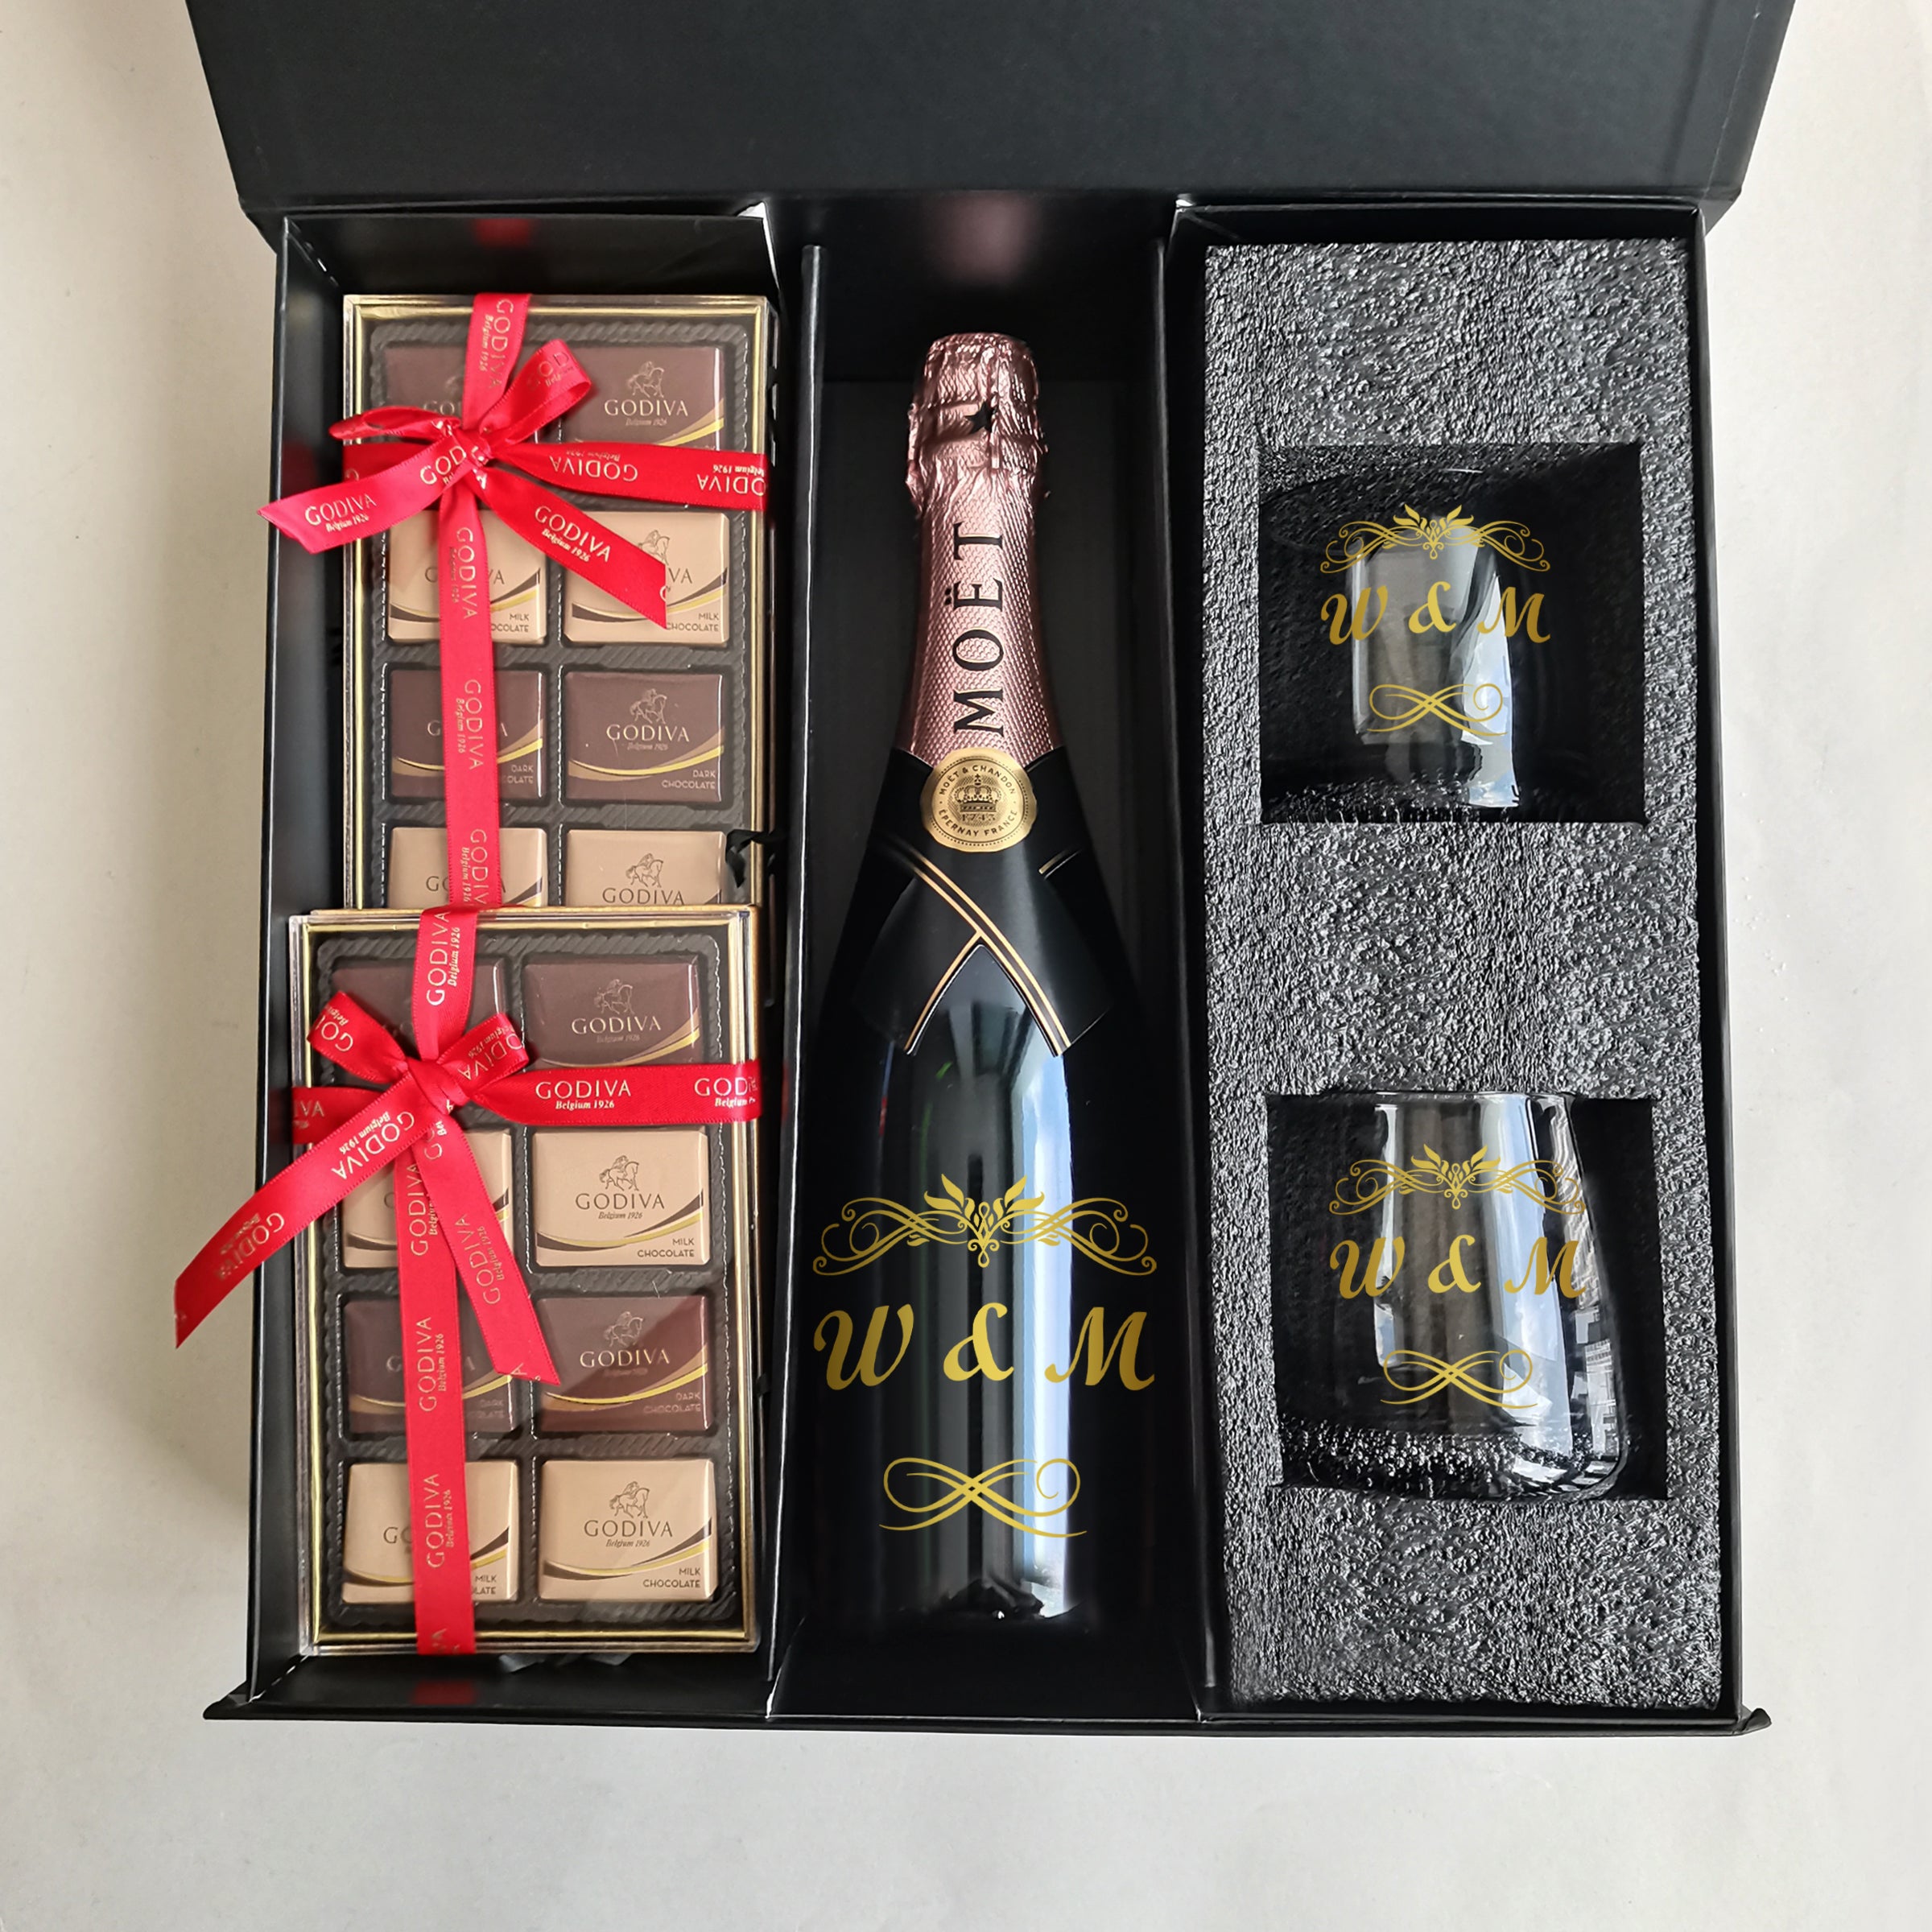 結婚禮物 伴手禮|Moët & Chandon Rose Impérial Gift Set |酩悅粉紅香檳&黑色威士忌杯套裝 - Design Your Own Wine